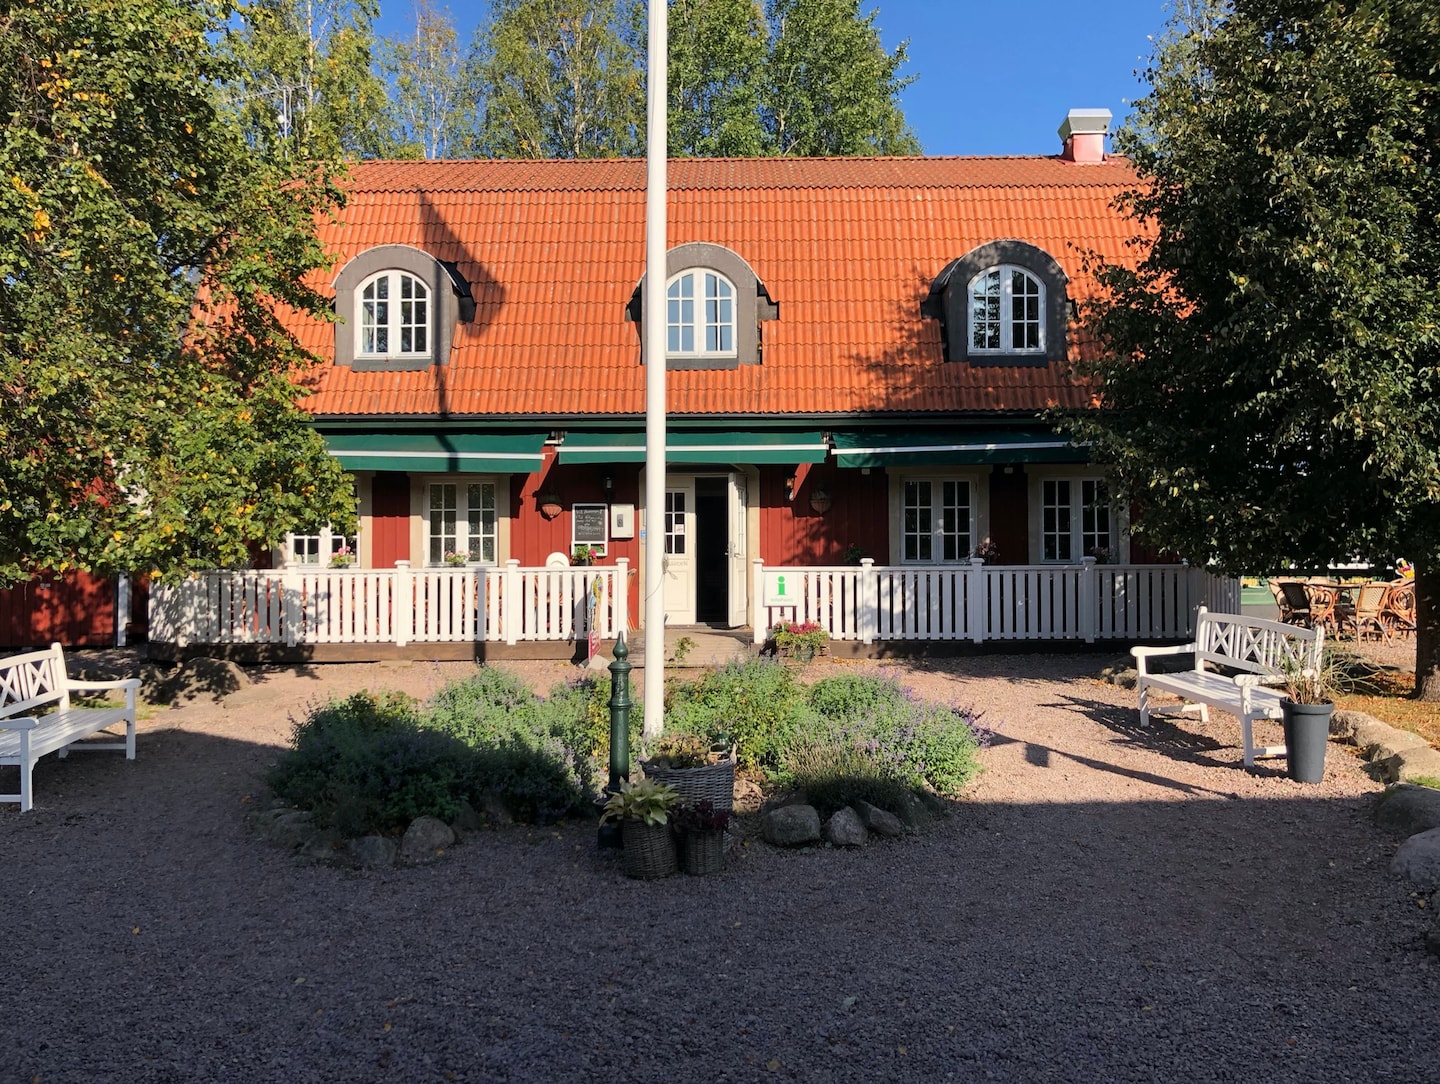 Hyr stuga i Vimmerby – promenadavstånd till Astrid Lindgrens värld (11 av 21)